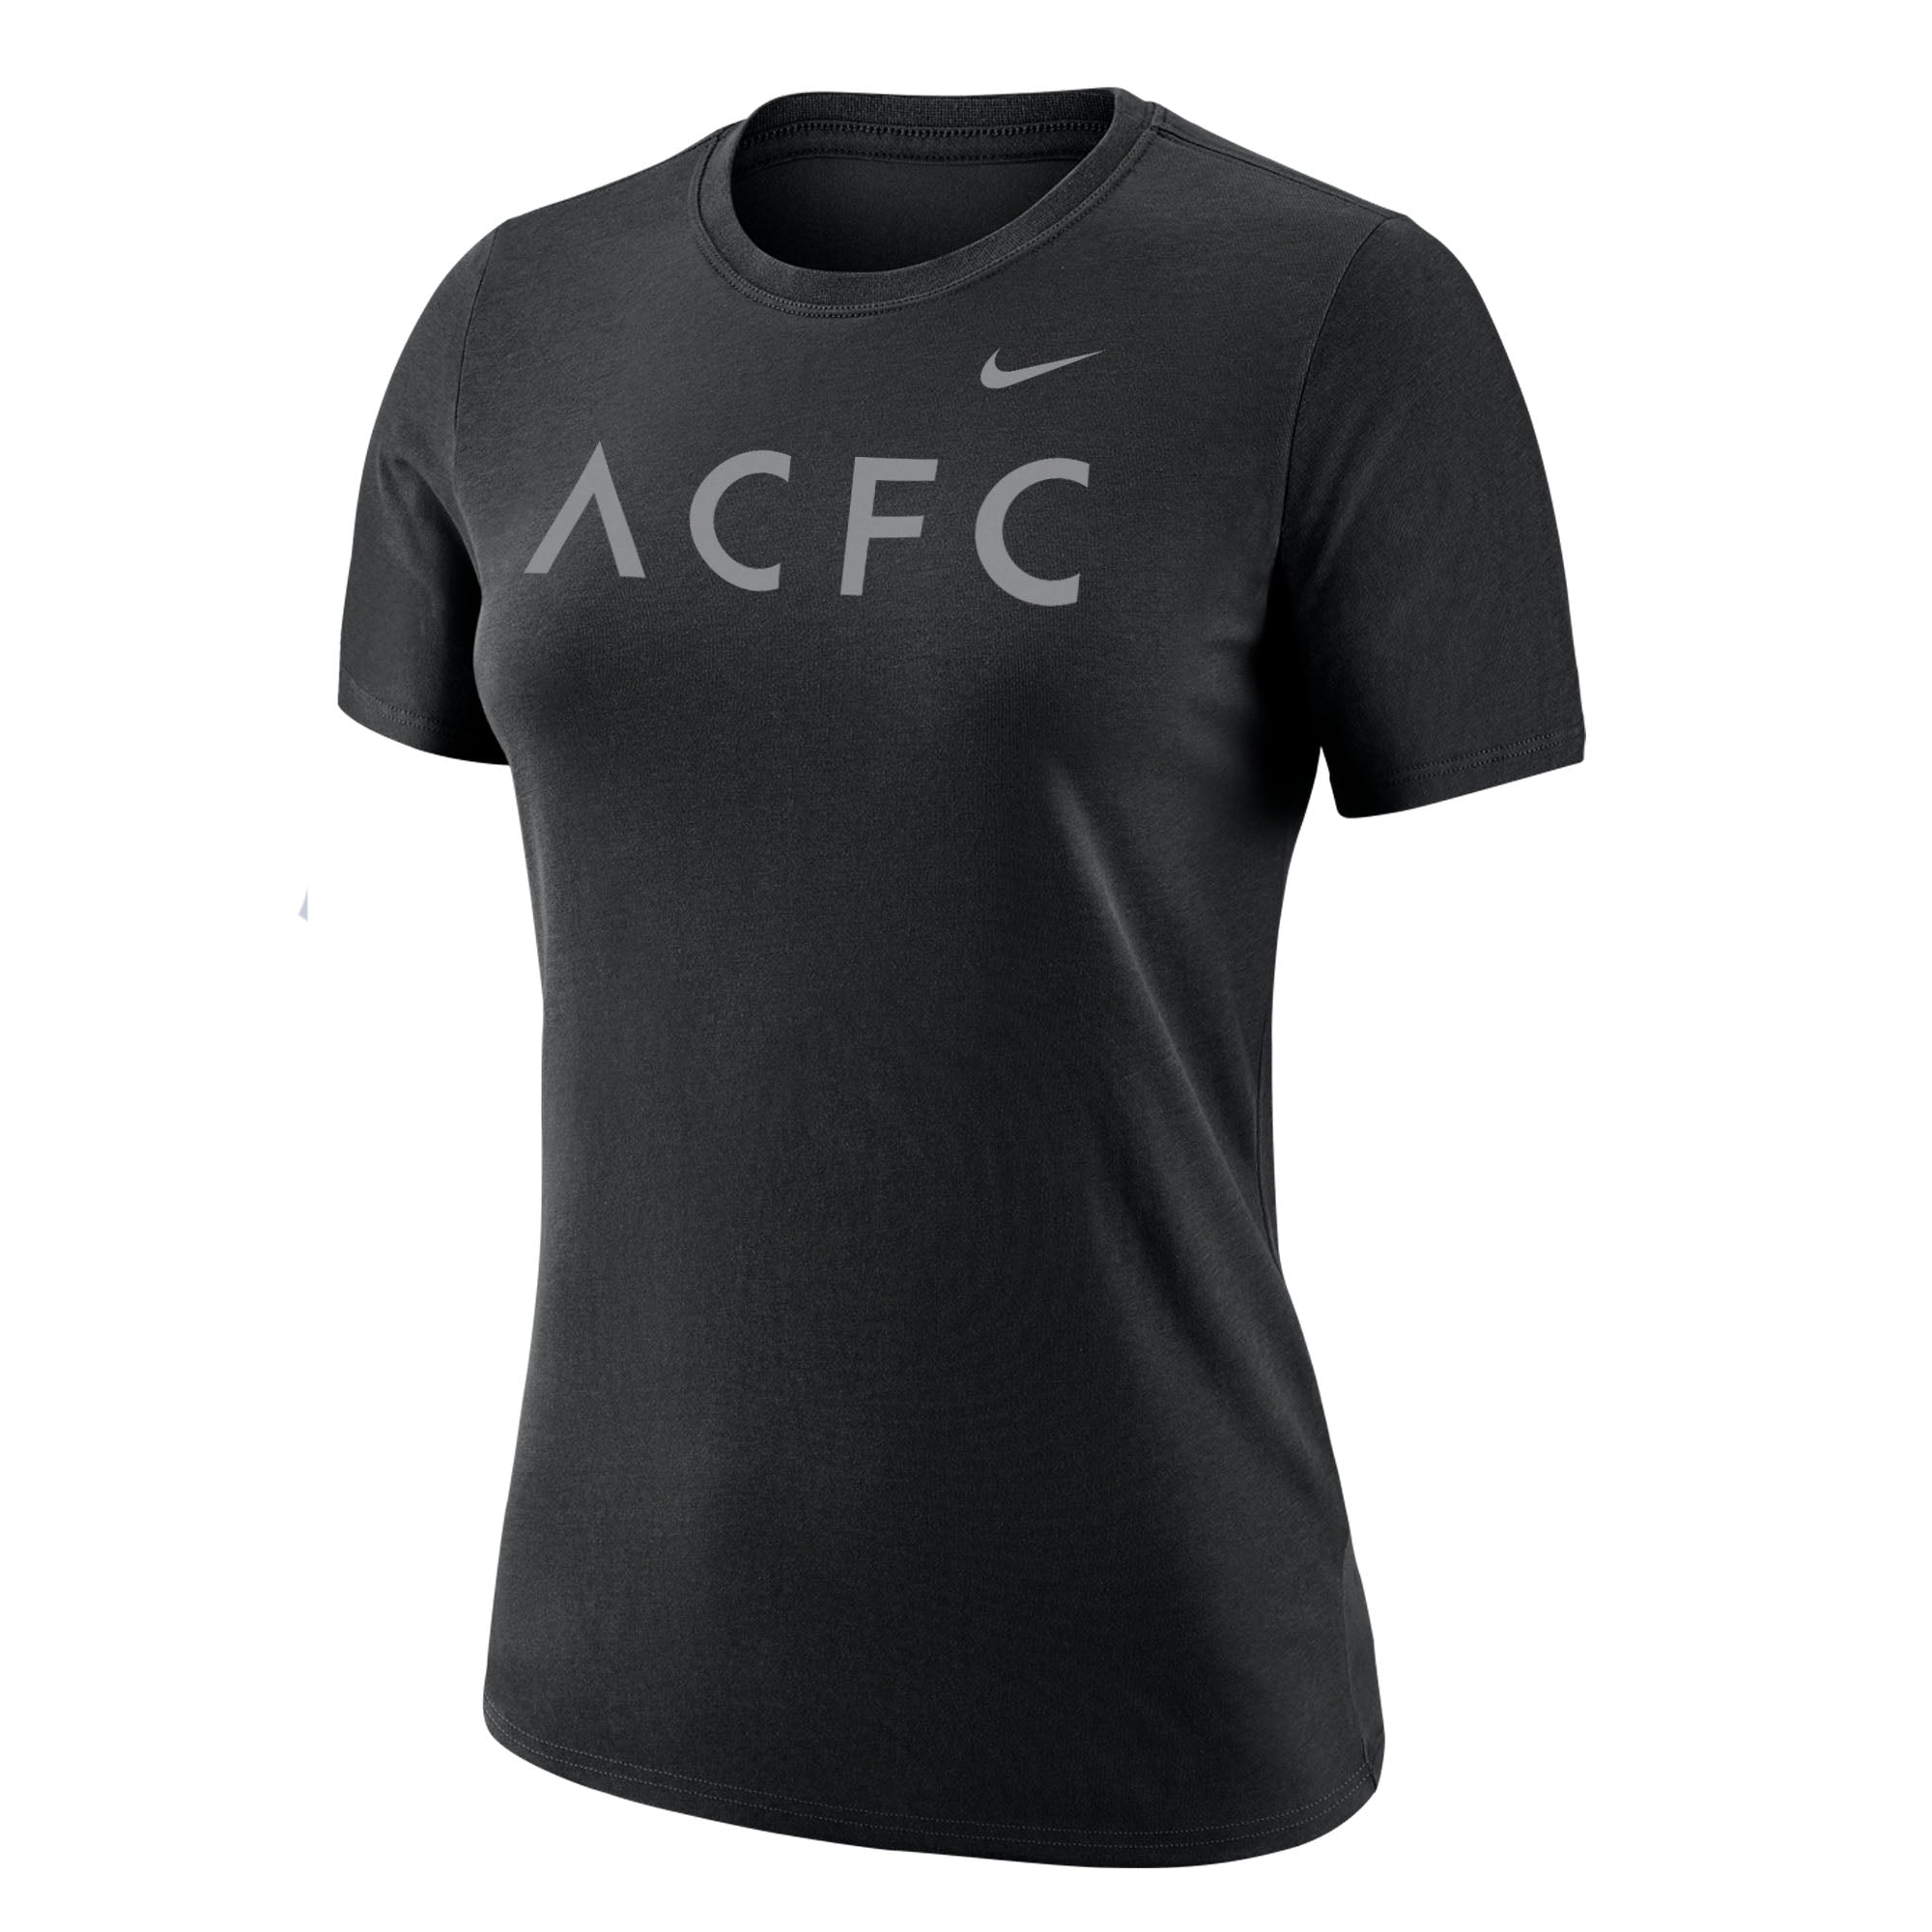 Camiseta negra de manga corta Nike Dri-FIT ACFC para mujer